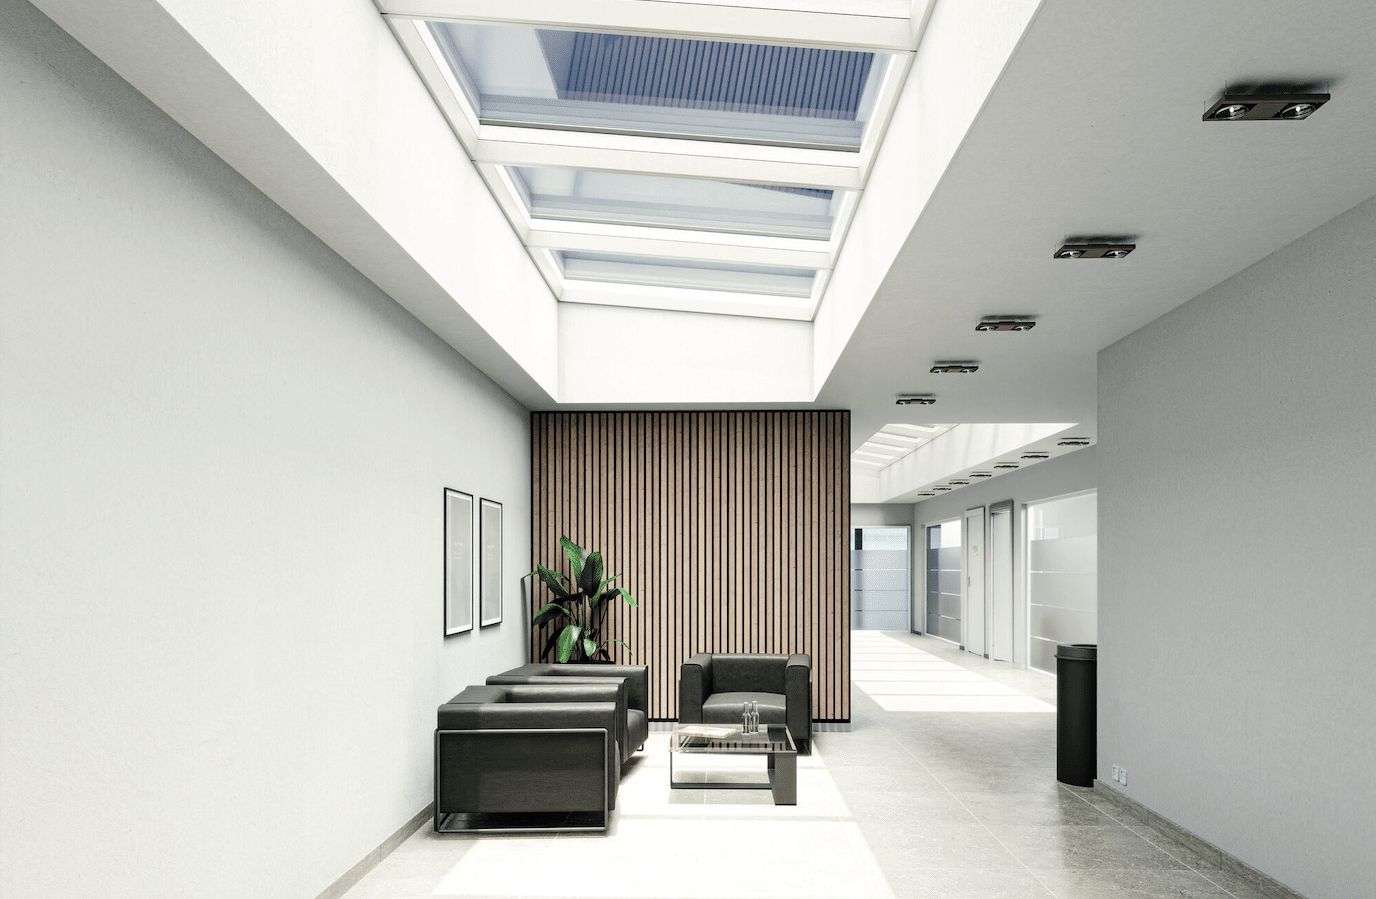 Lamilux zeigt einen Gang in einem Bürogebäude mit einem Wartebereich, schwarzen Lederstühlen und einem Panoramadach für den Einfall von Tageslicht.